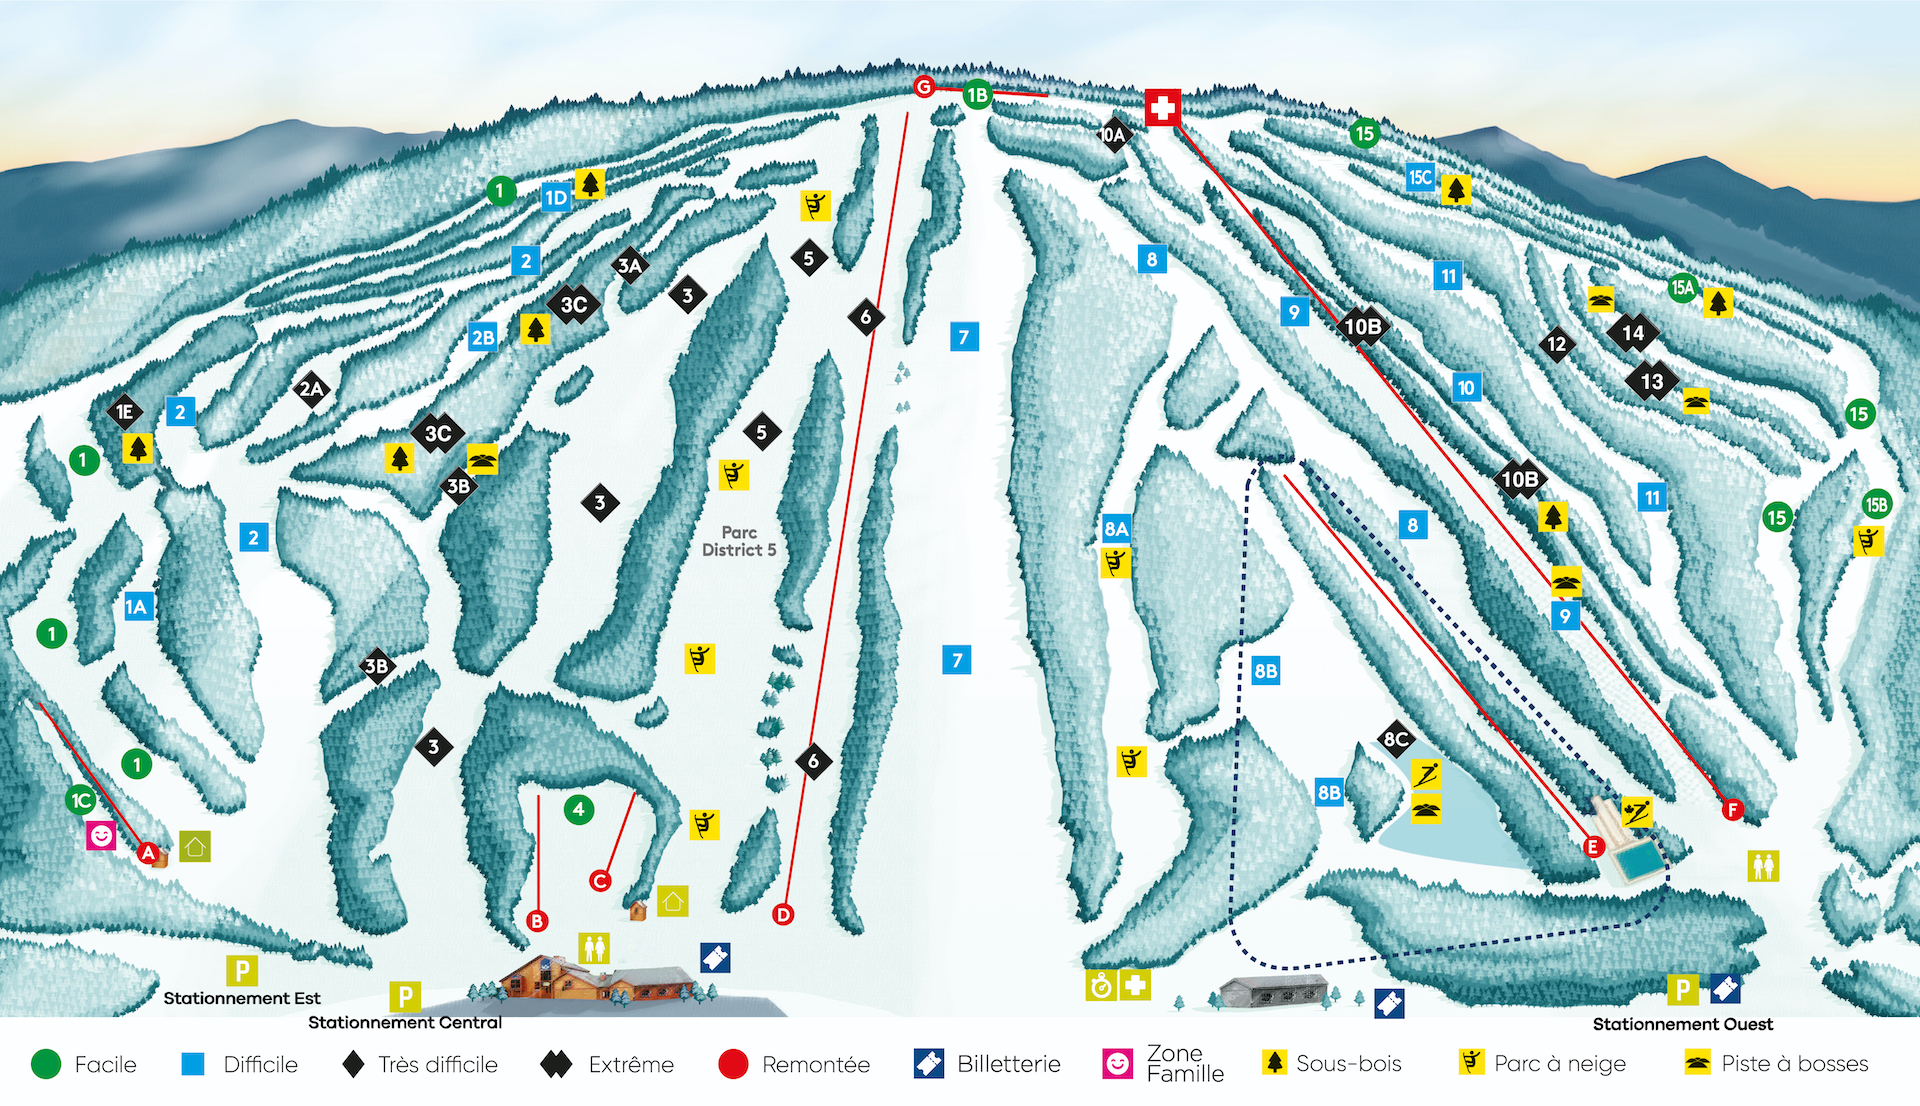 Pistes & conditions - Centre de ski Le Relais